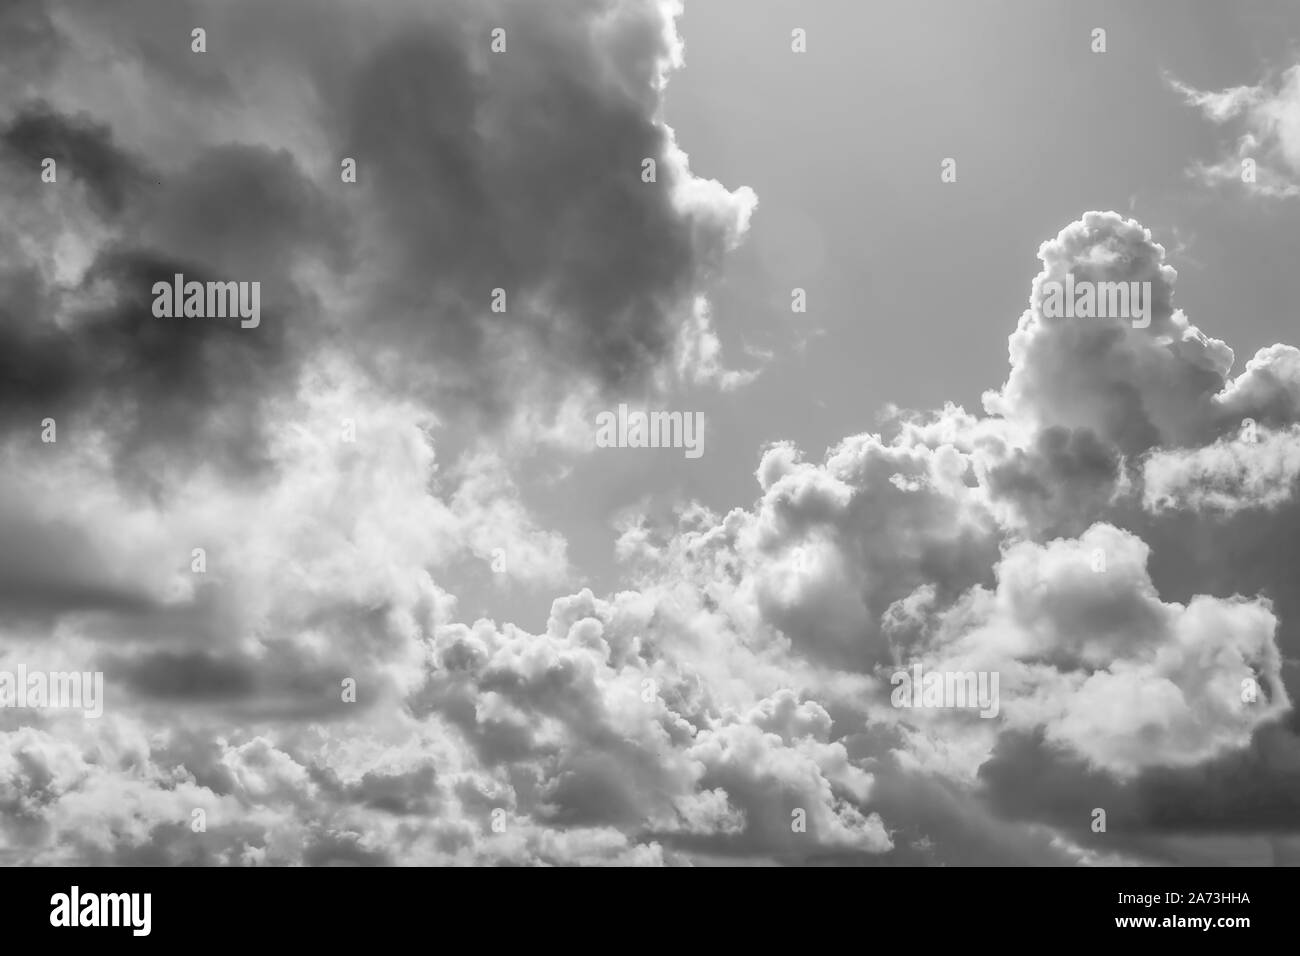 Natur abstrakt Hintergrund - schöne und malerische bewölkter Himmel ideal für Wand Dekoration oder Leinwand drucken (schwarz und weiß) Stockfoto